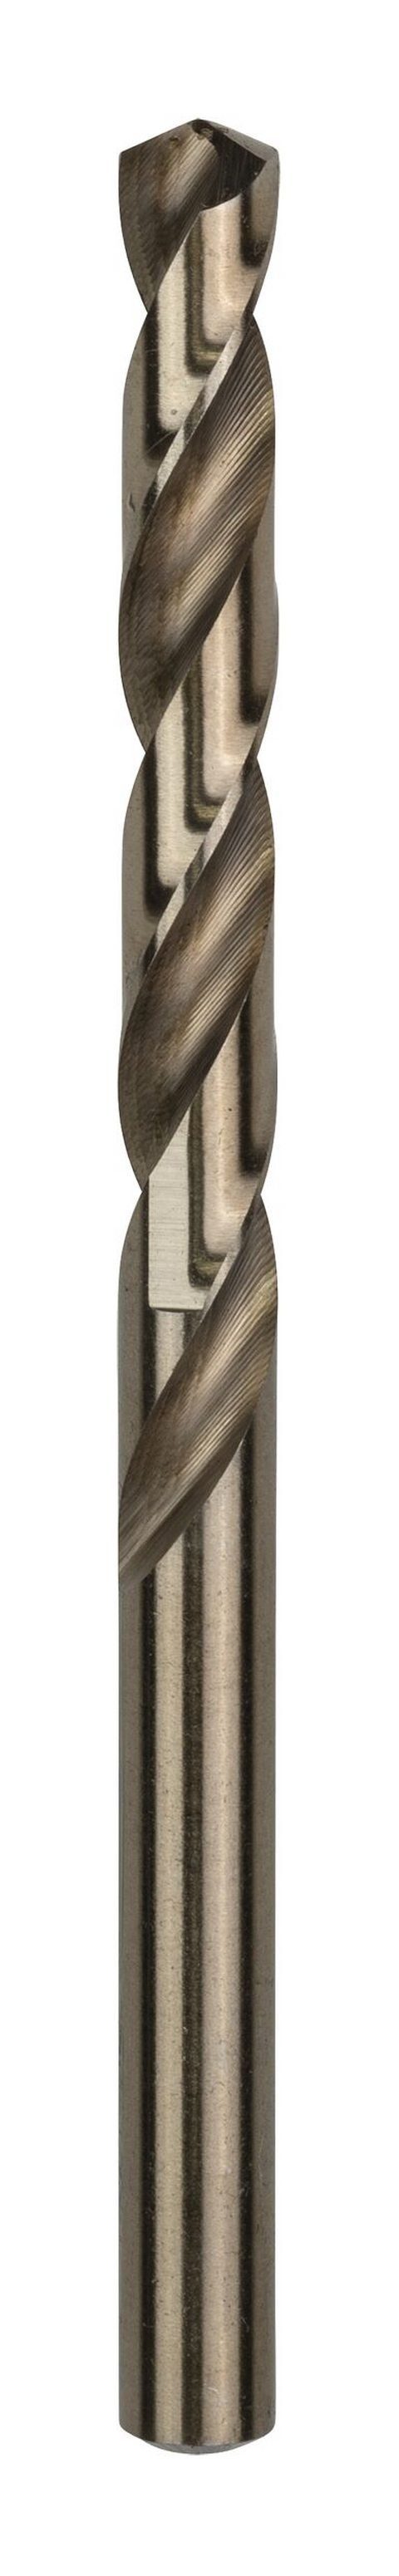 BOSCH Metallbohrer, (10 109 Stück), 7,5 - 338) (DIN x x HSS-Co - 69 10er-Pack mm